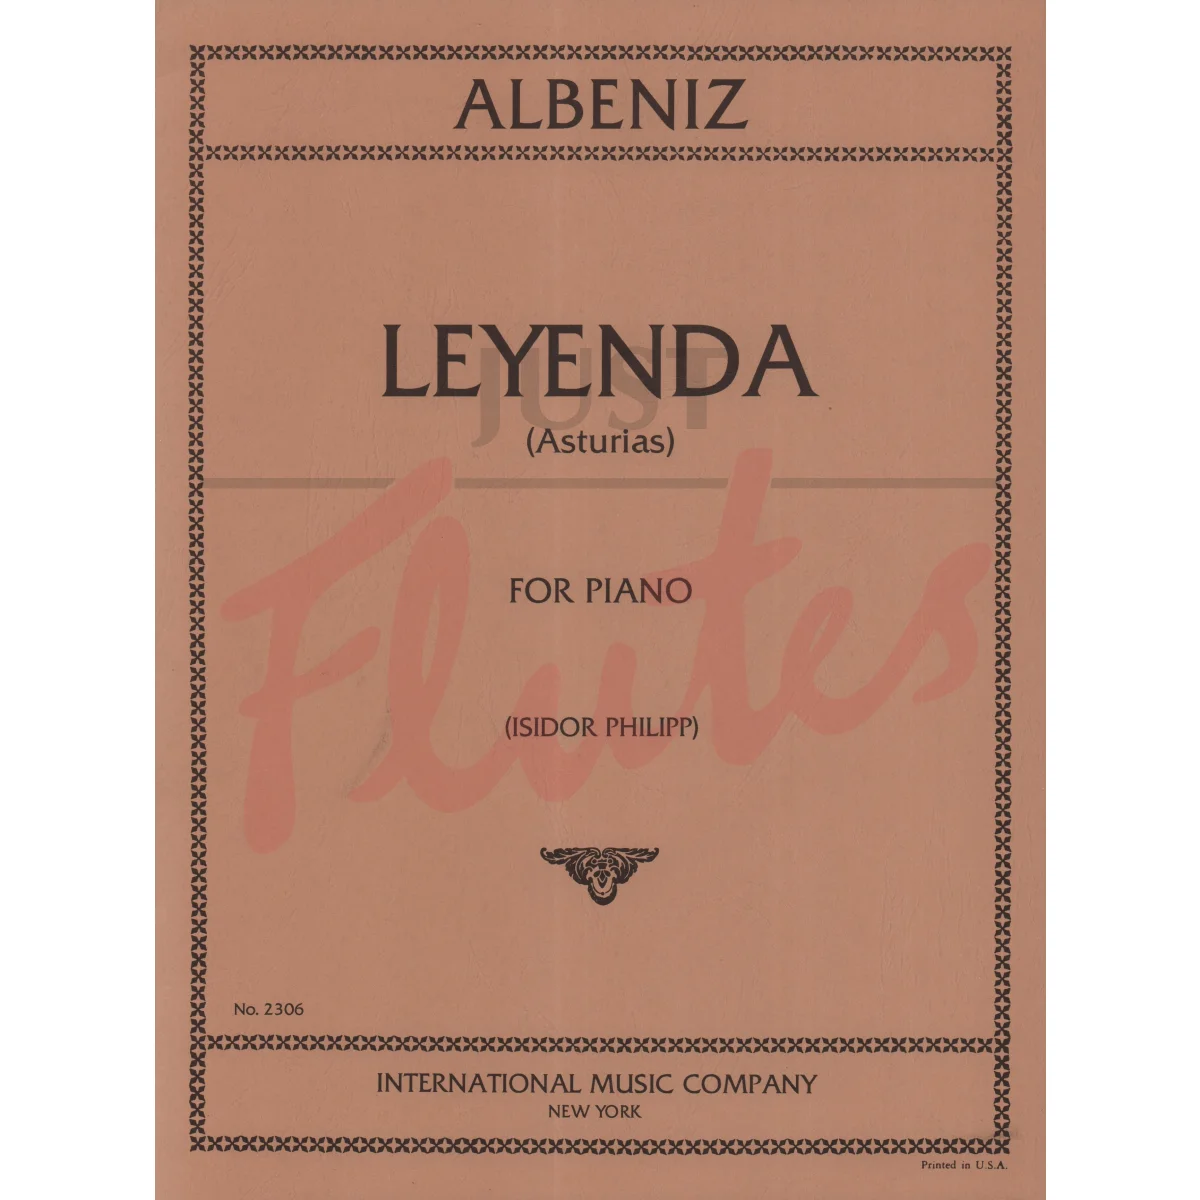 Leyenda (Asturias) for Piano